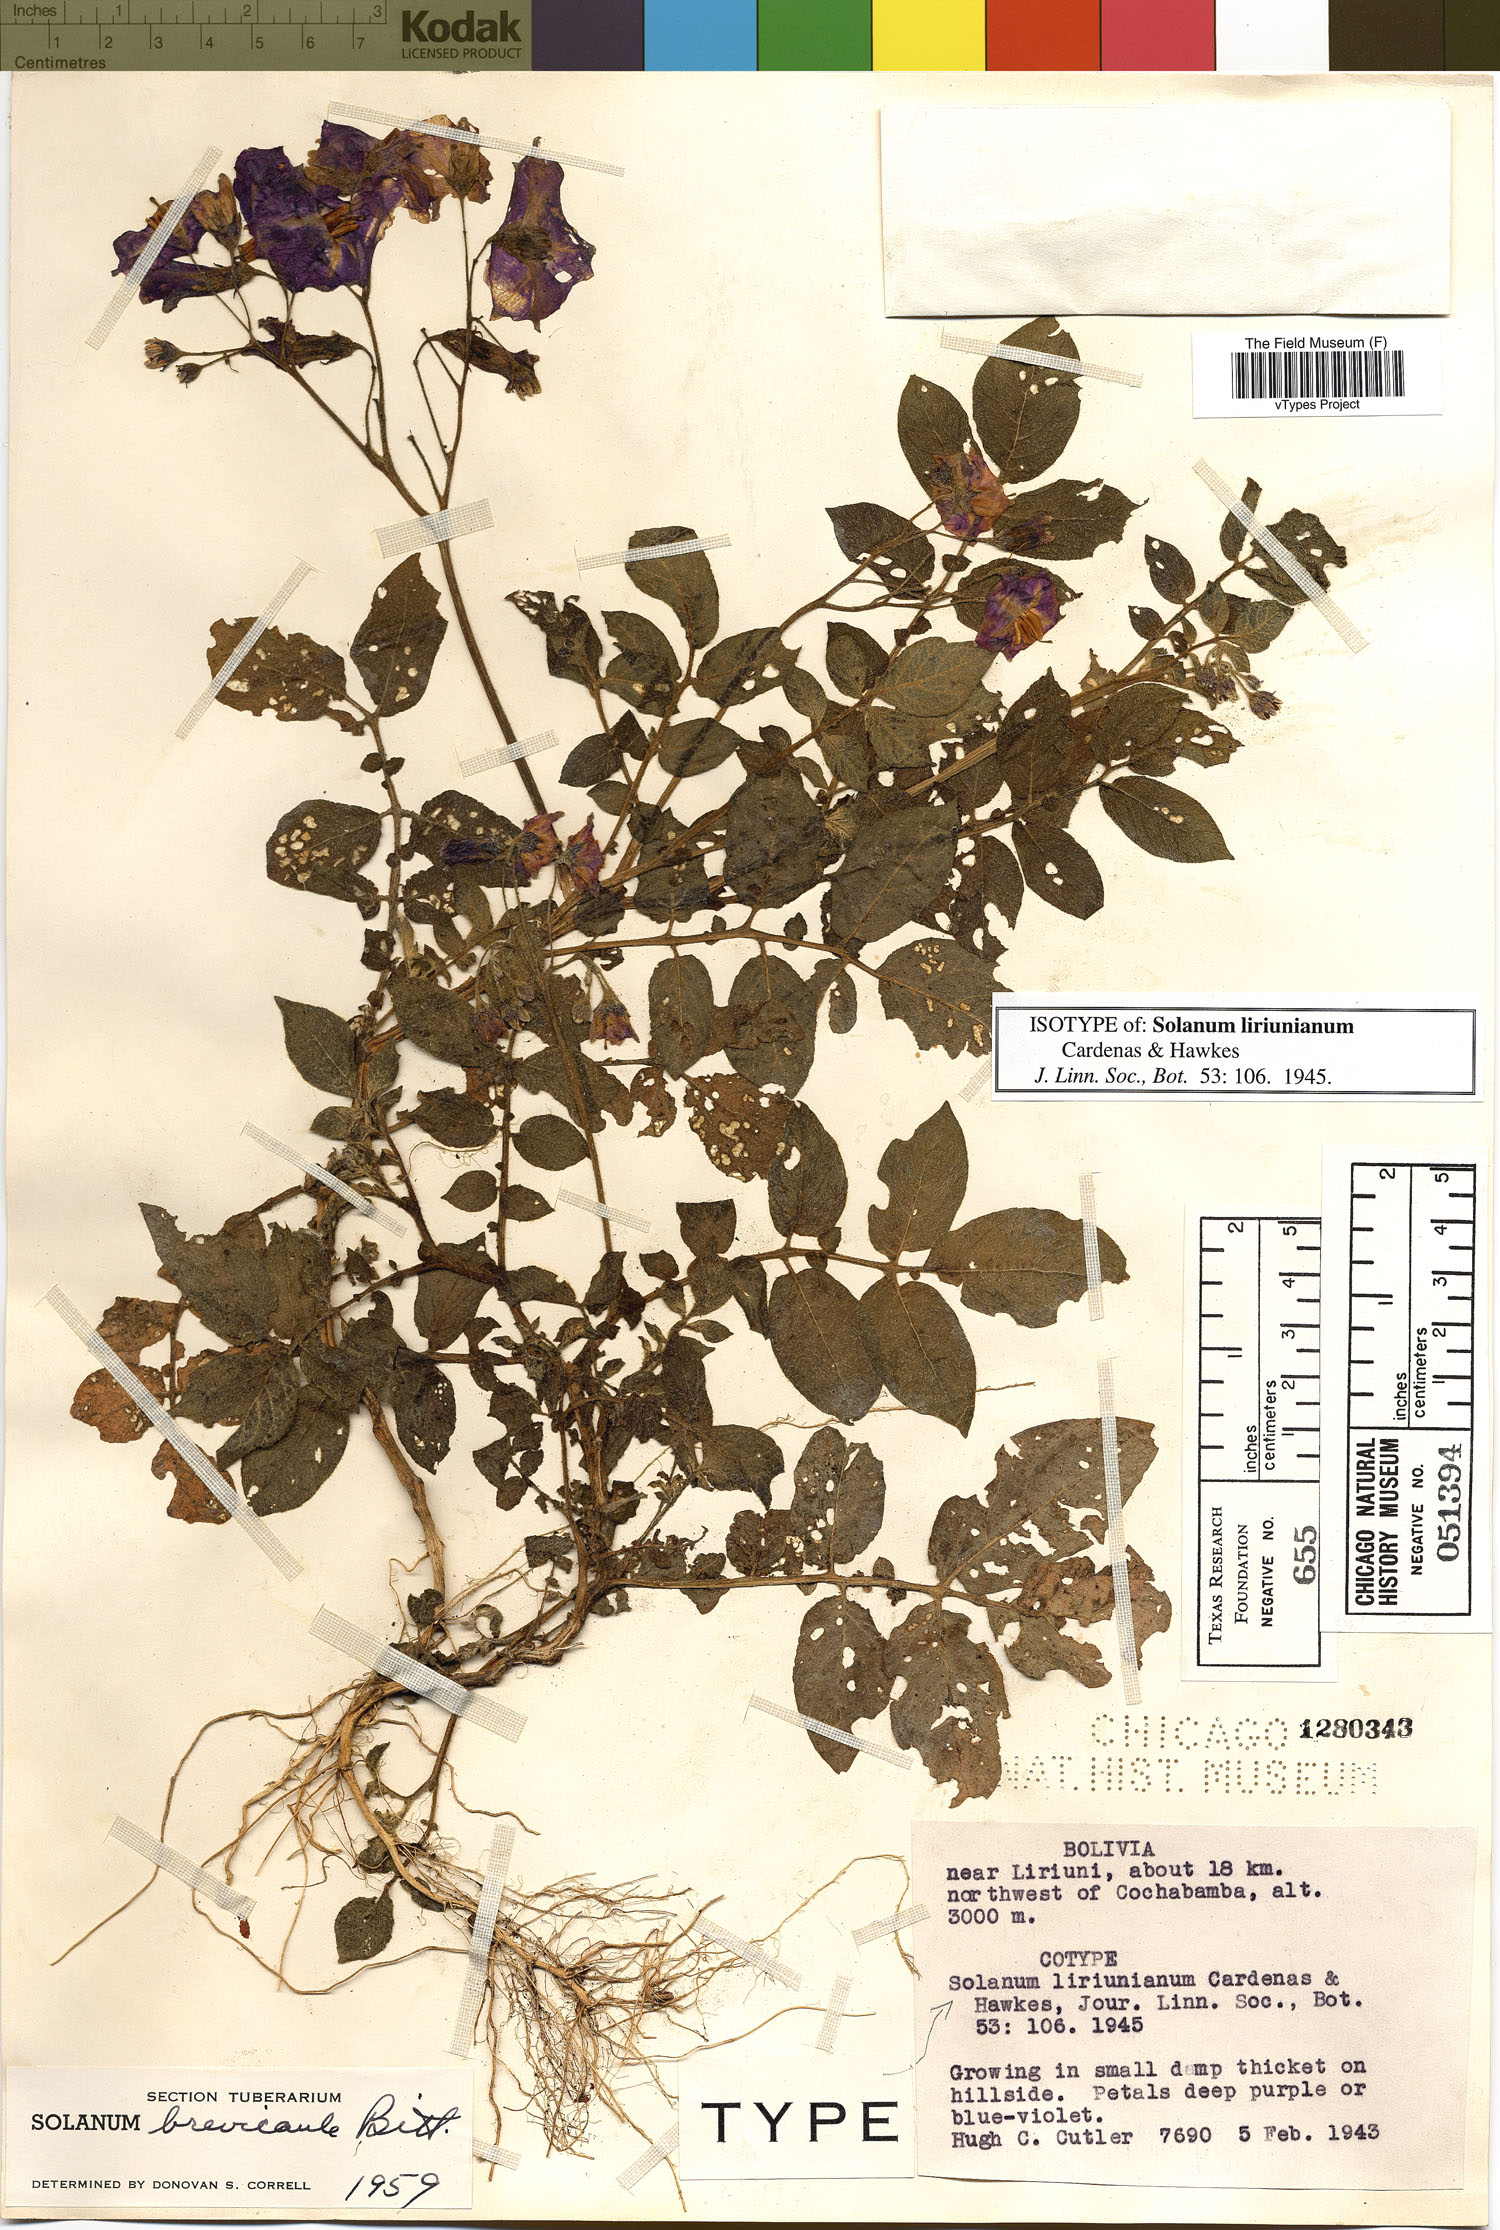 Solanum liriunianum image